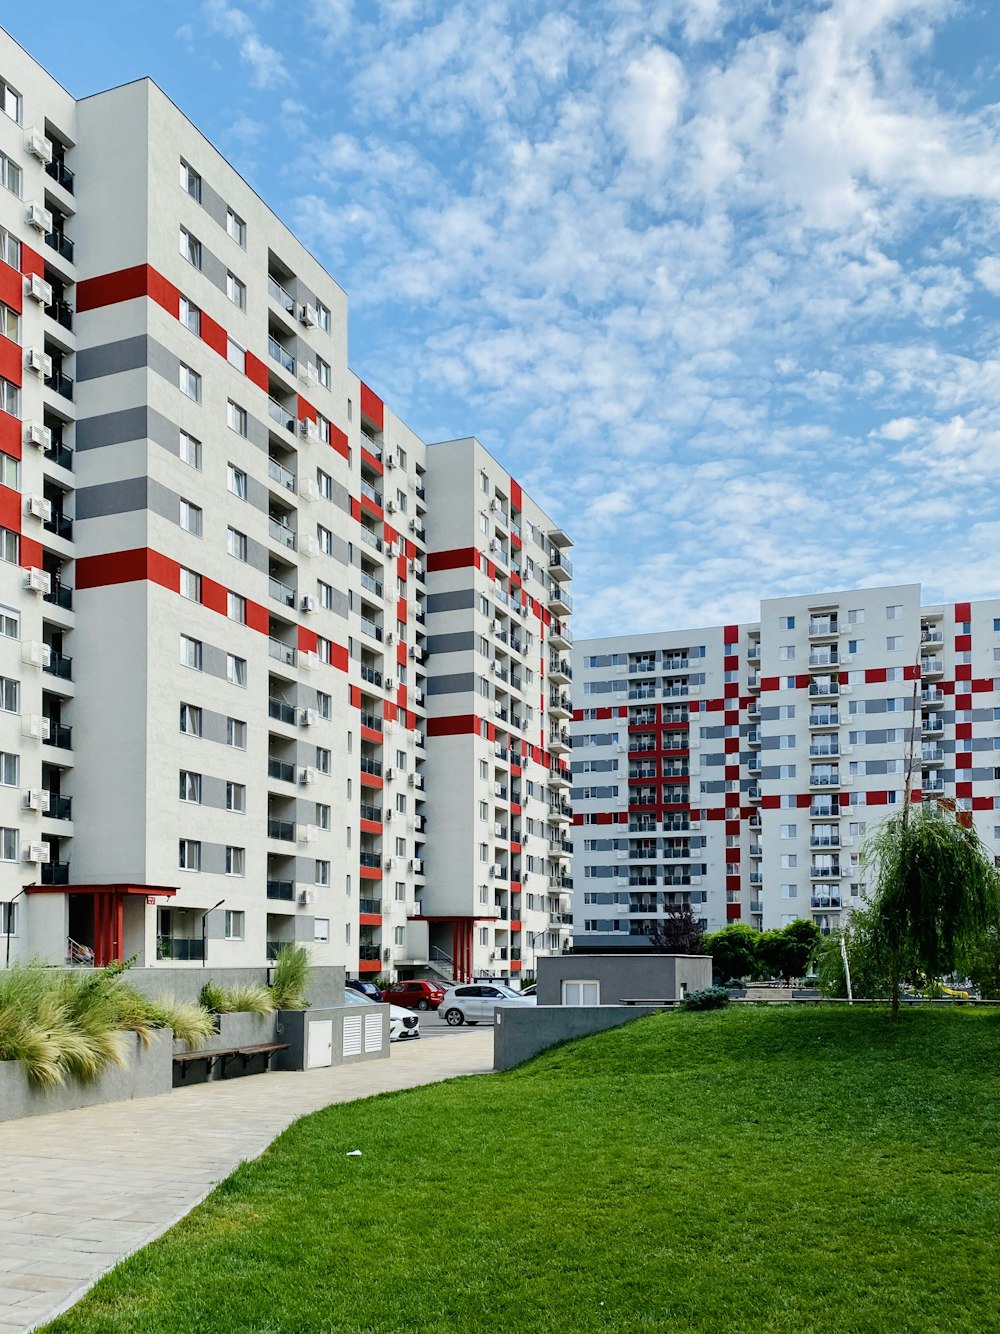 Gebäude aus weißem und rotem Beton